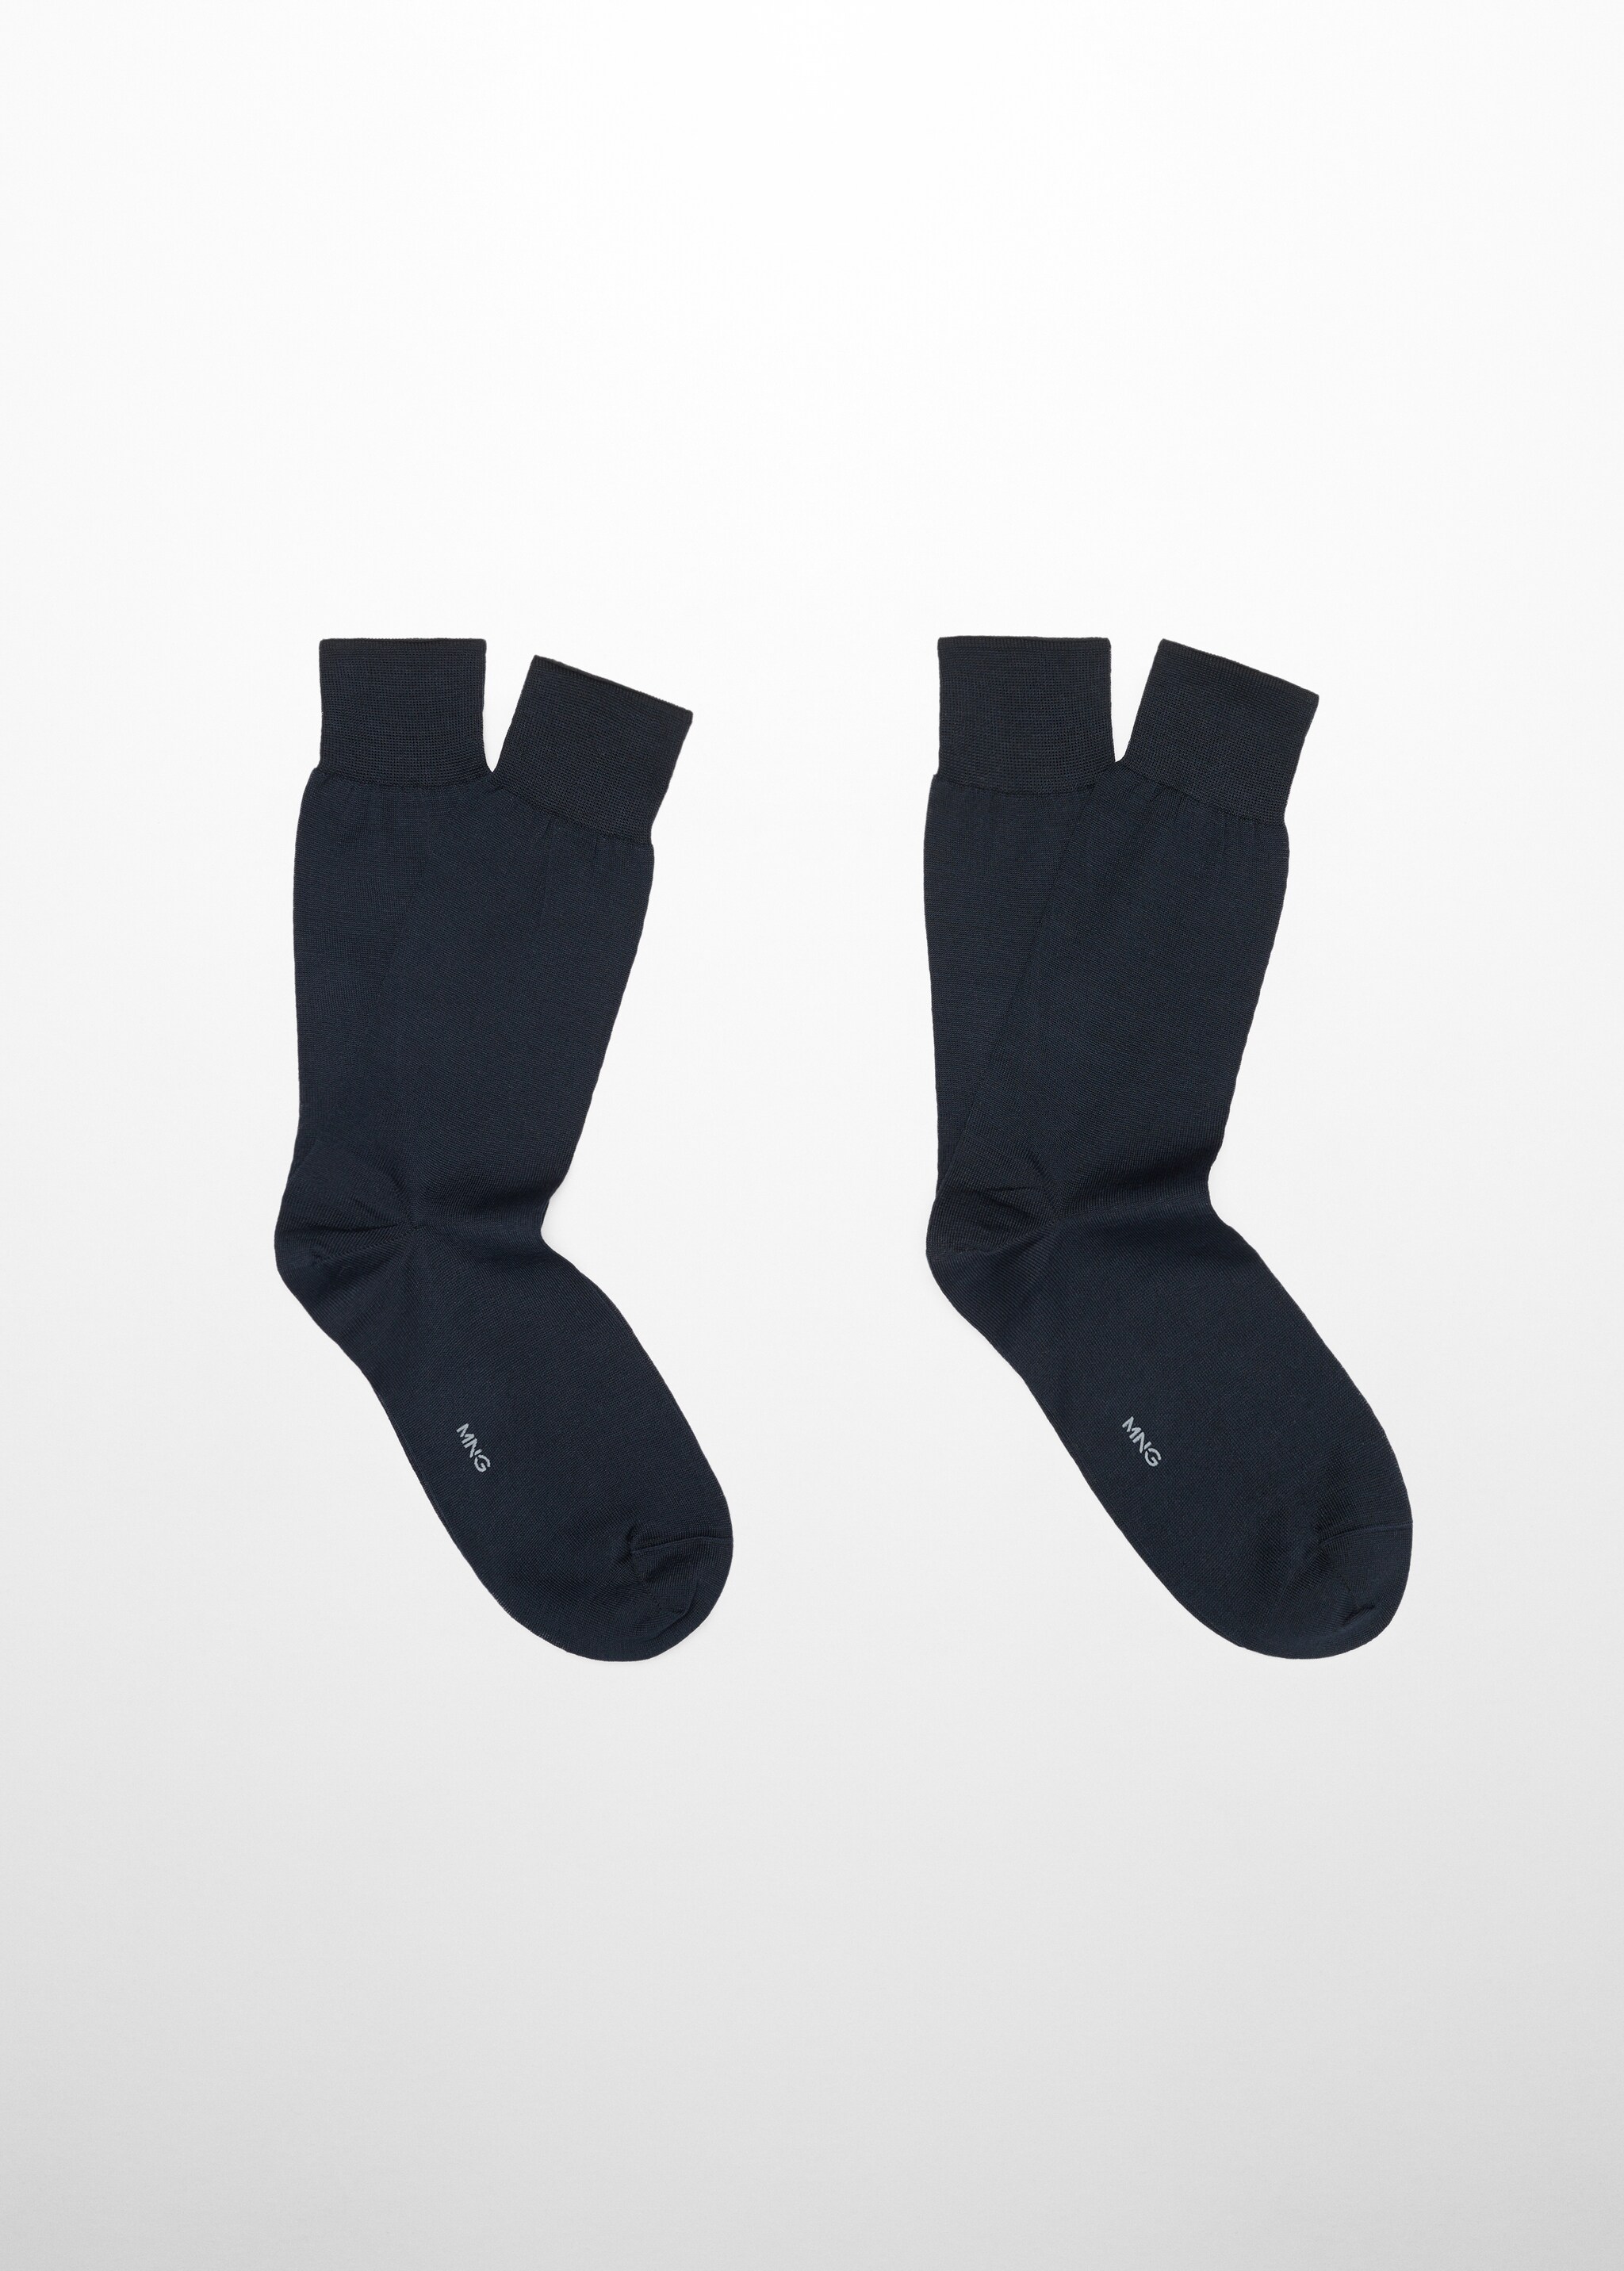 Pack 2 calcetines 100% algodón liso - Artículo sin modelo